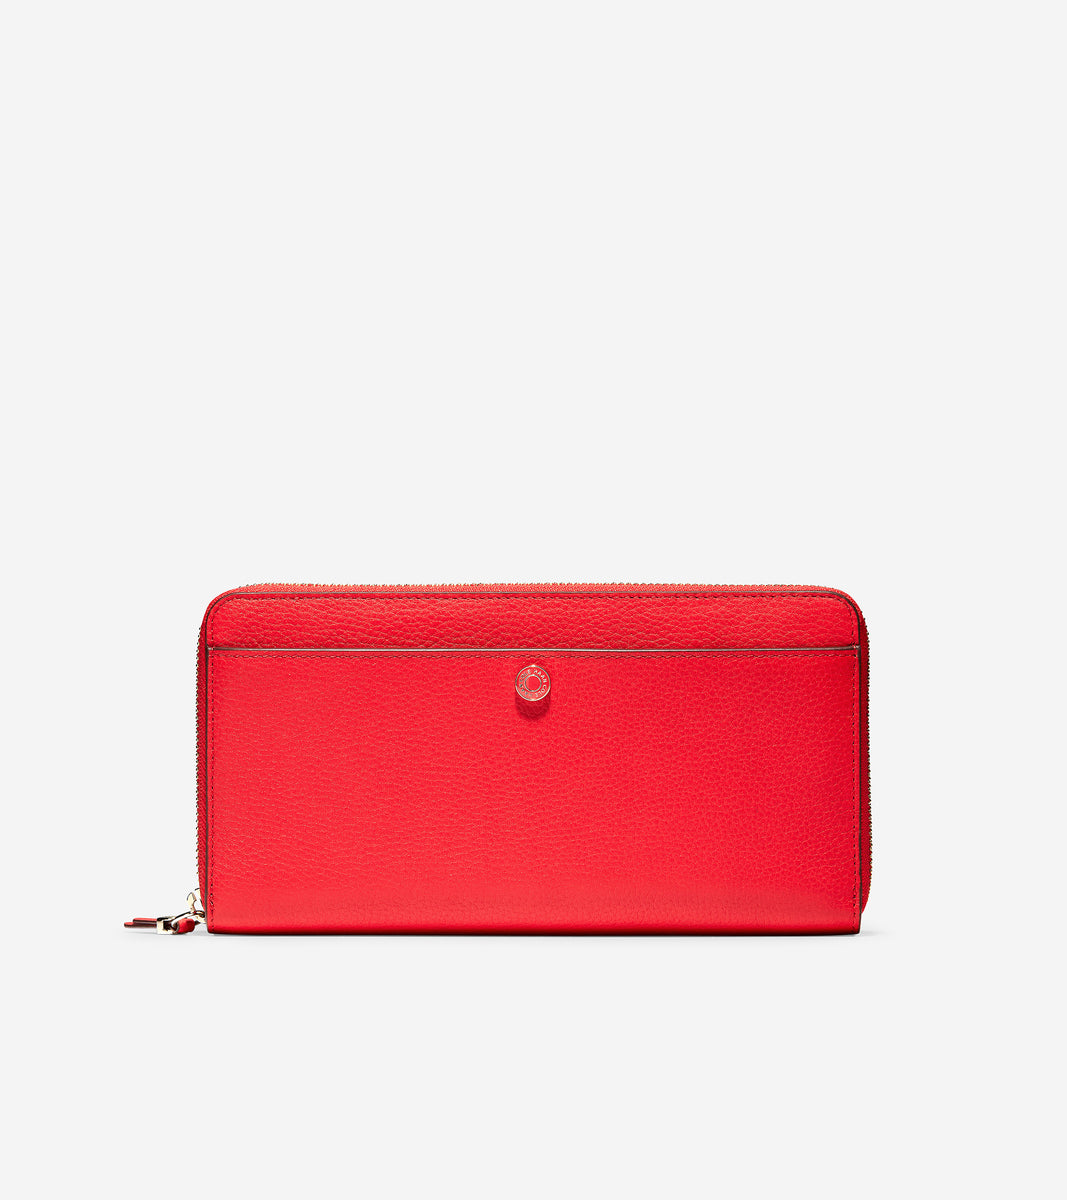 ColeHaan-GRANDSERIES Travel Wallet-u04471-Flame Scarlet Leather